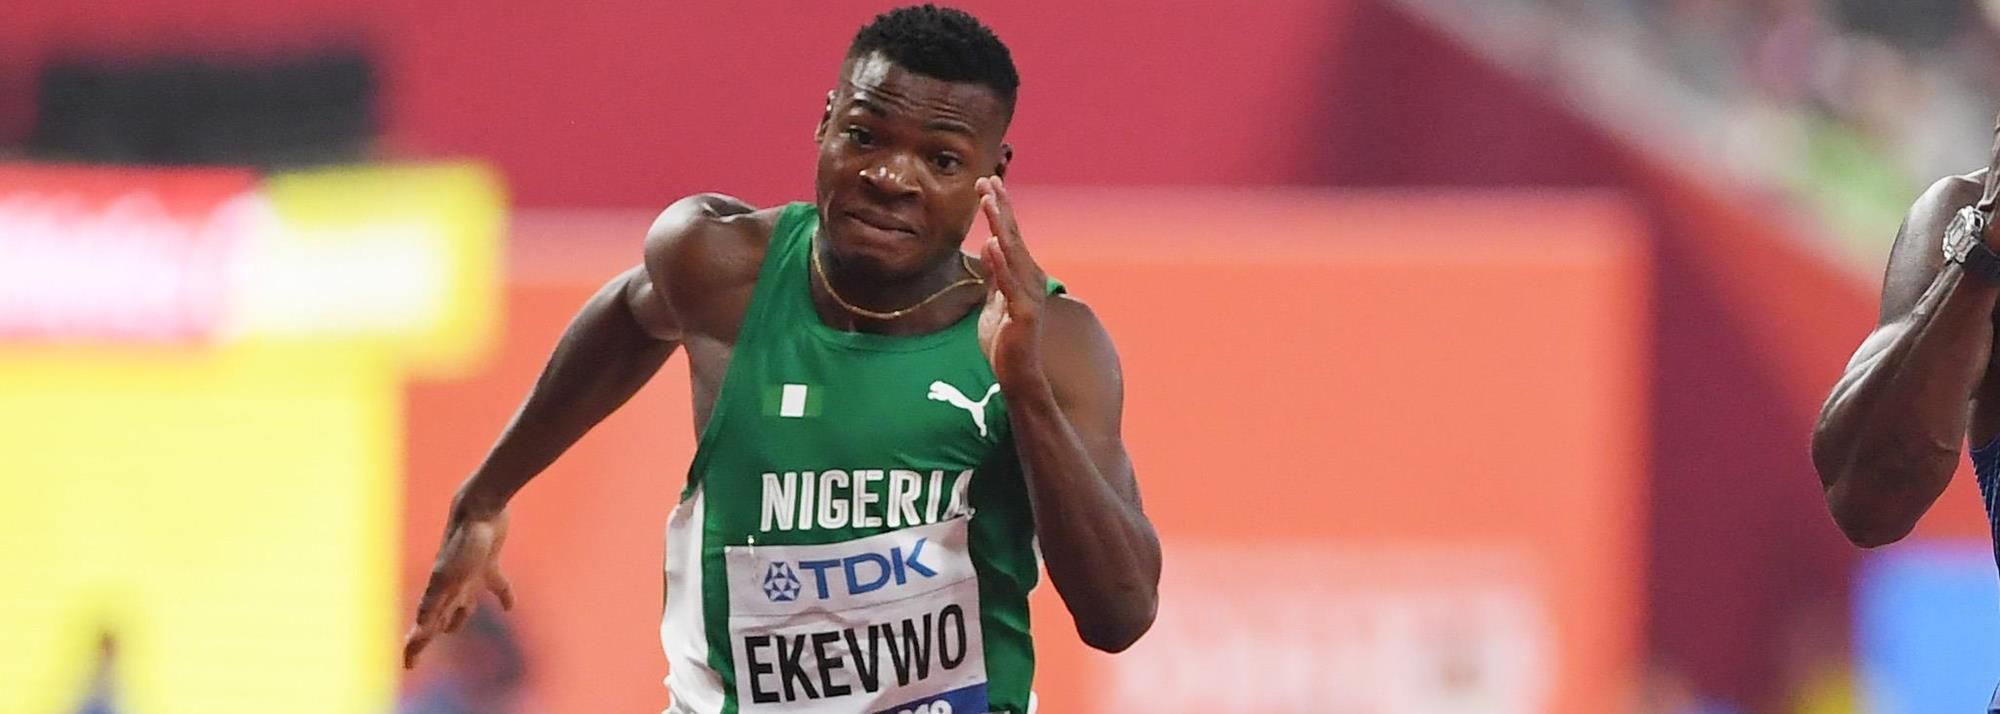 Raymond EKEVWO | Profile | World Athletics